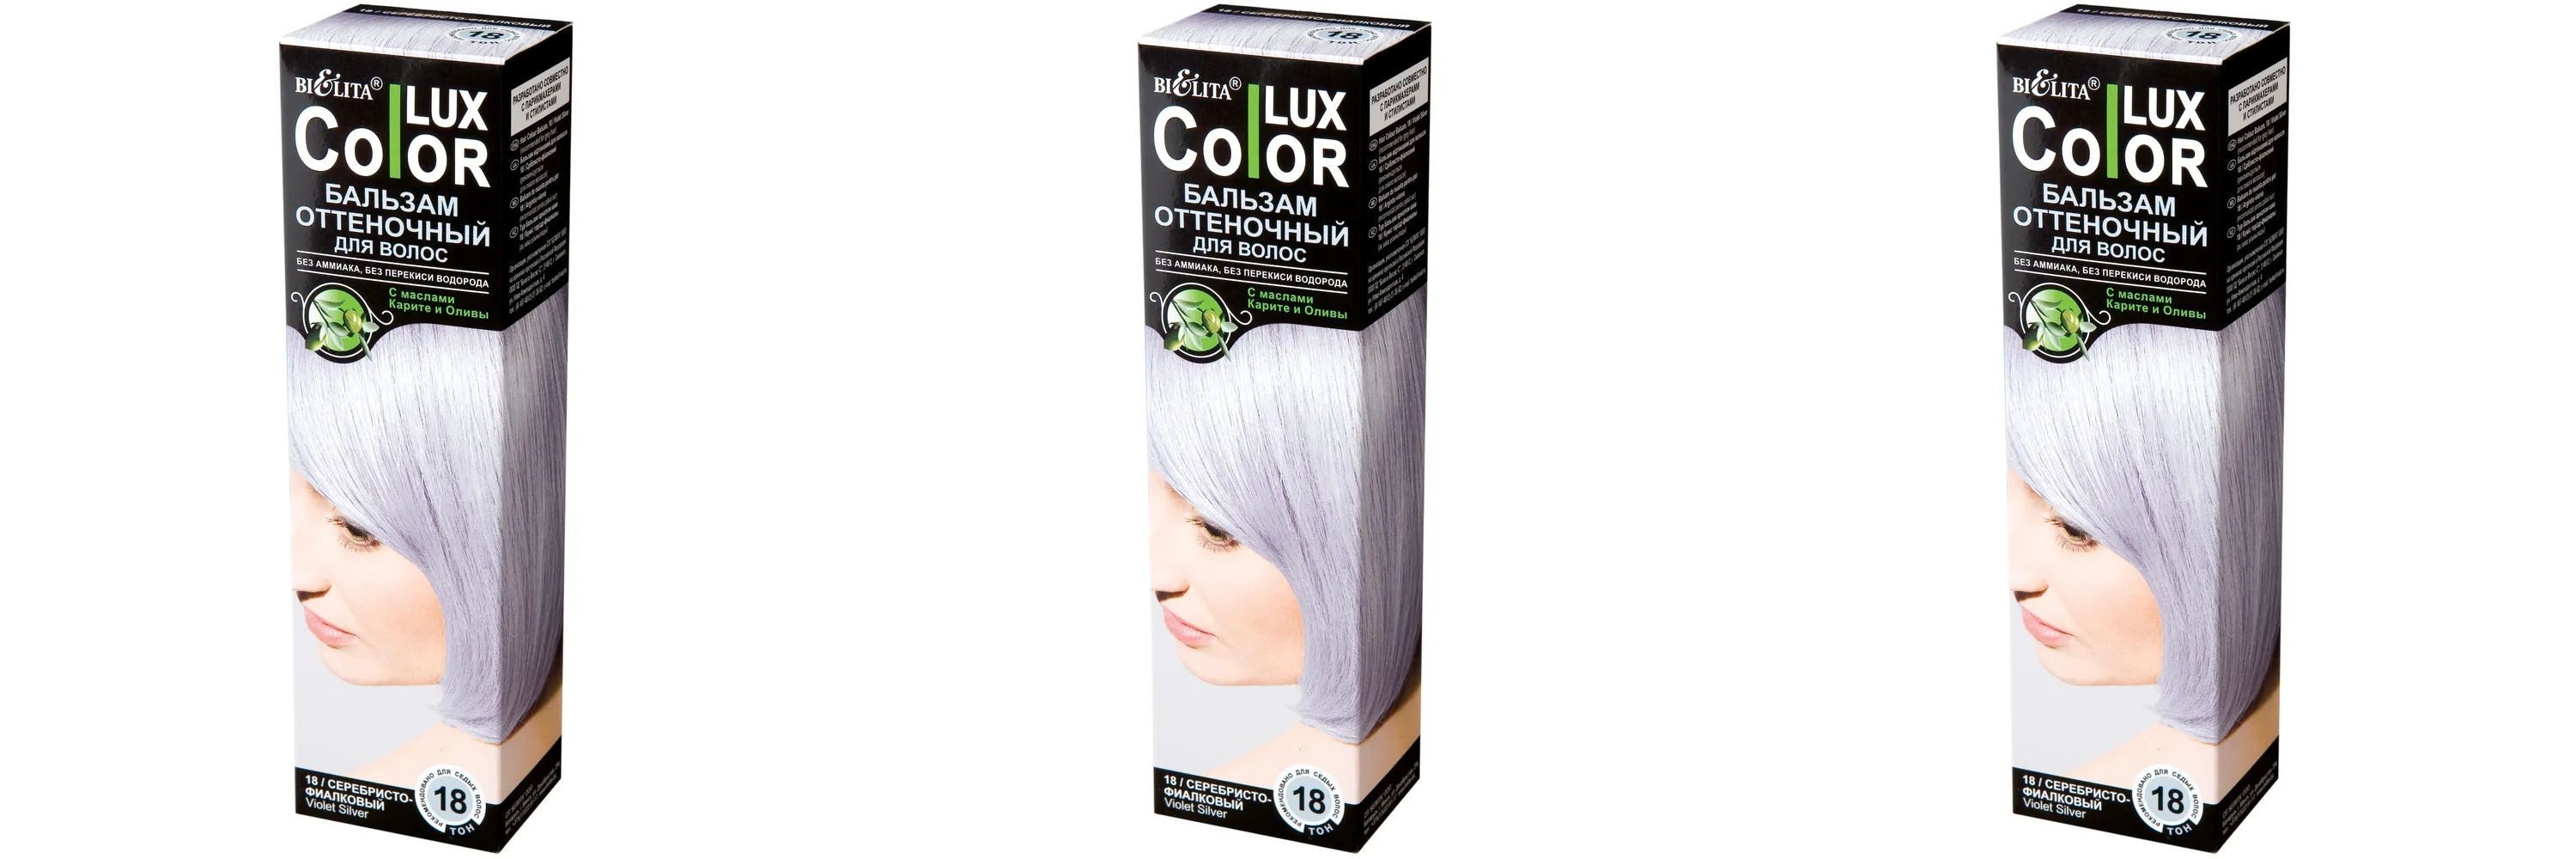 Белита Color lux Бальзам для волос оттеночный тон 18 серебристо-фиалковый 100 мл,3шт бальзам белита для волос оттеночный тон 18 серебристо фиалковый 100 мл 2шт